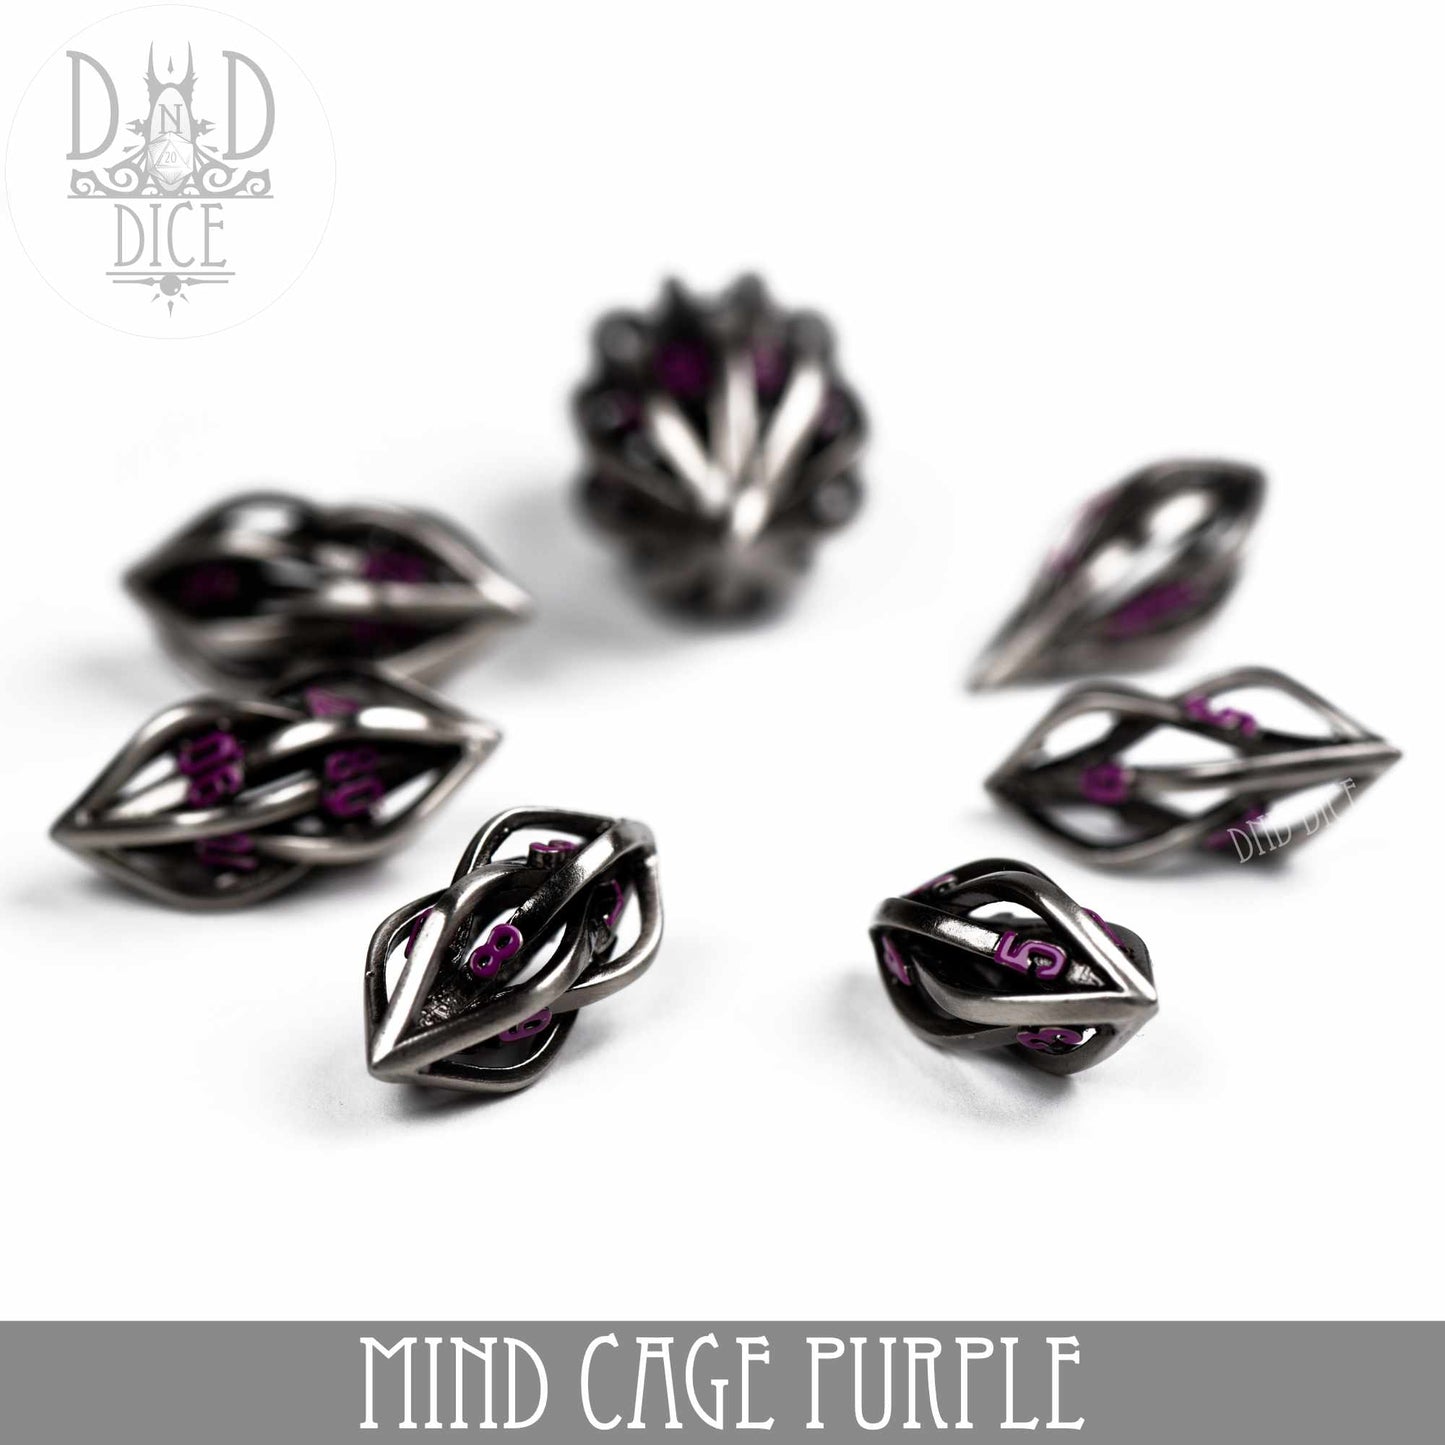 Mind Cage Purple - Juego de dados de metal (caja de regalo)